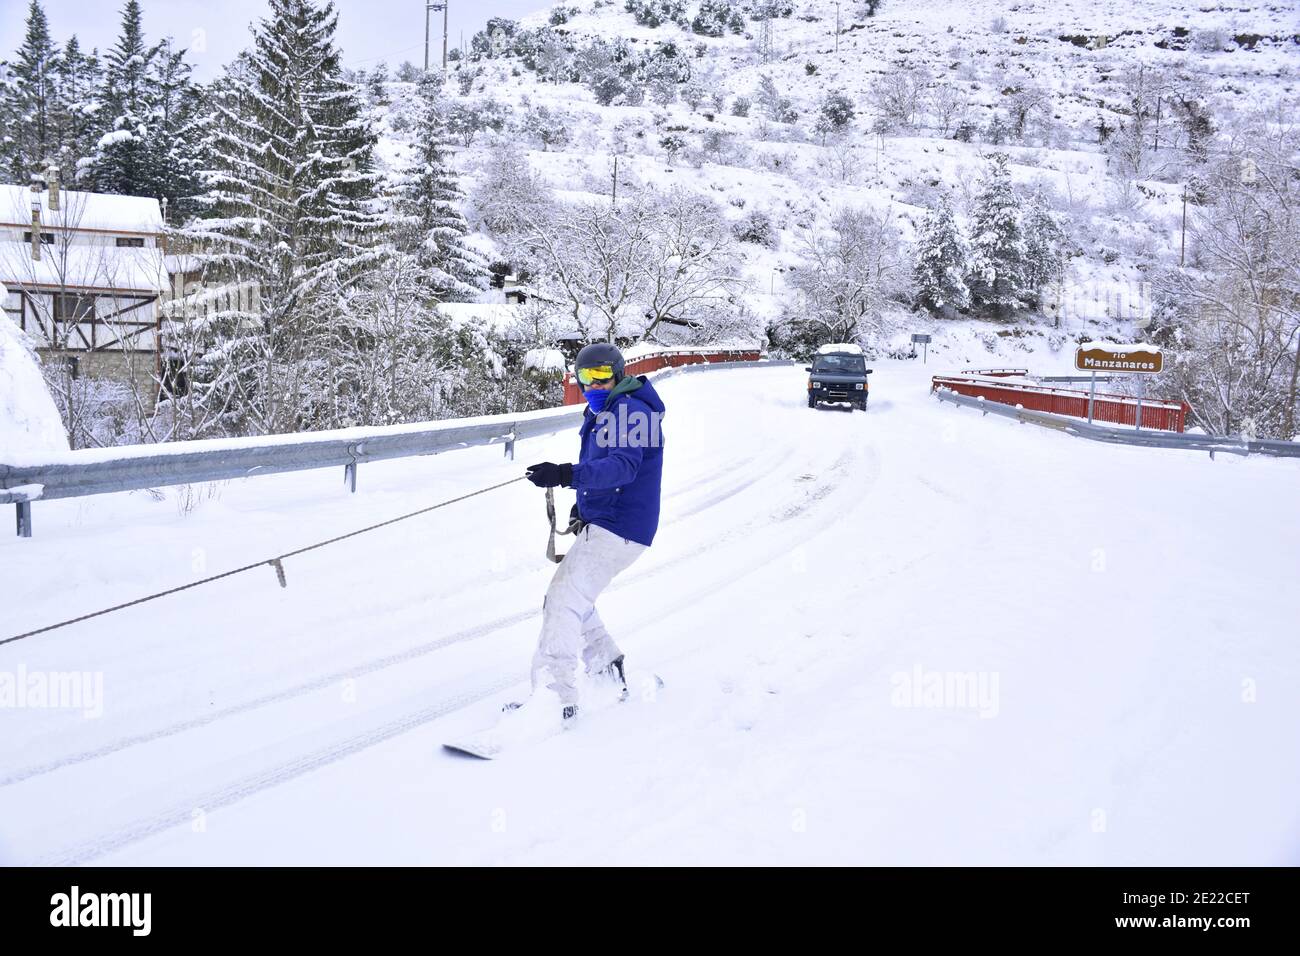 Mann in einer blauen Jacke Snowboarding durch ein Seil zu einem Fahrzeug gesichert. Schnee auf einer Hauptstraße in La Rioja. Filomena Schneesturm, Spanien, Januar 2021. Stockfoto